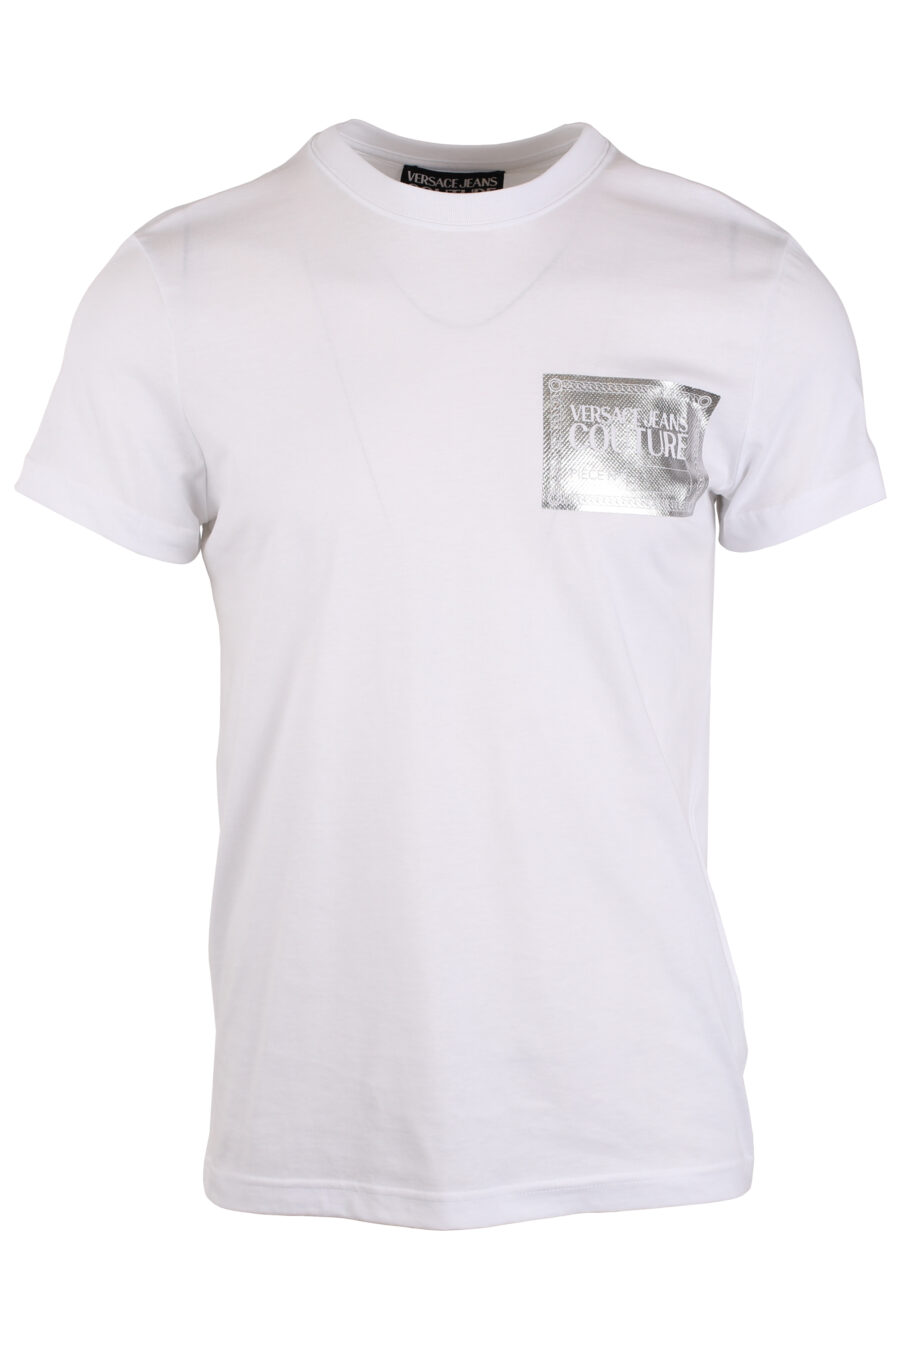 Camiseta blanca con logo en placa plateado - IMG 4050